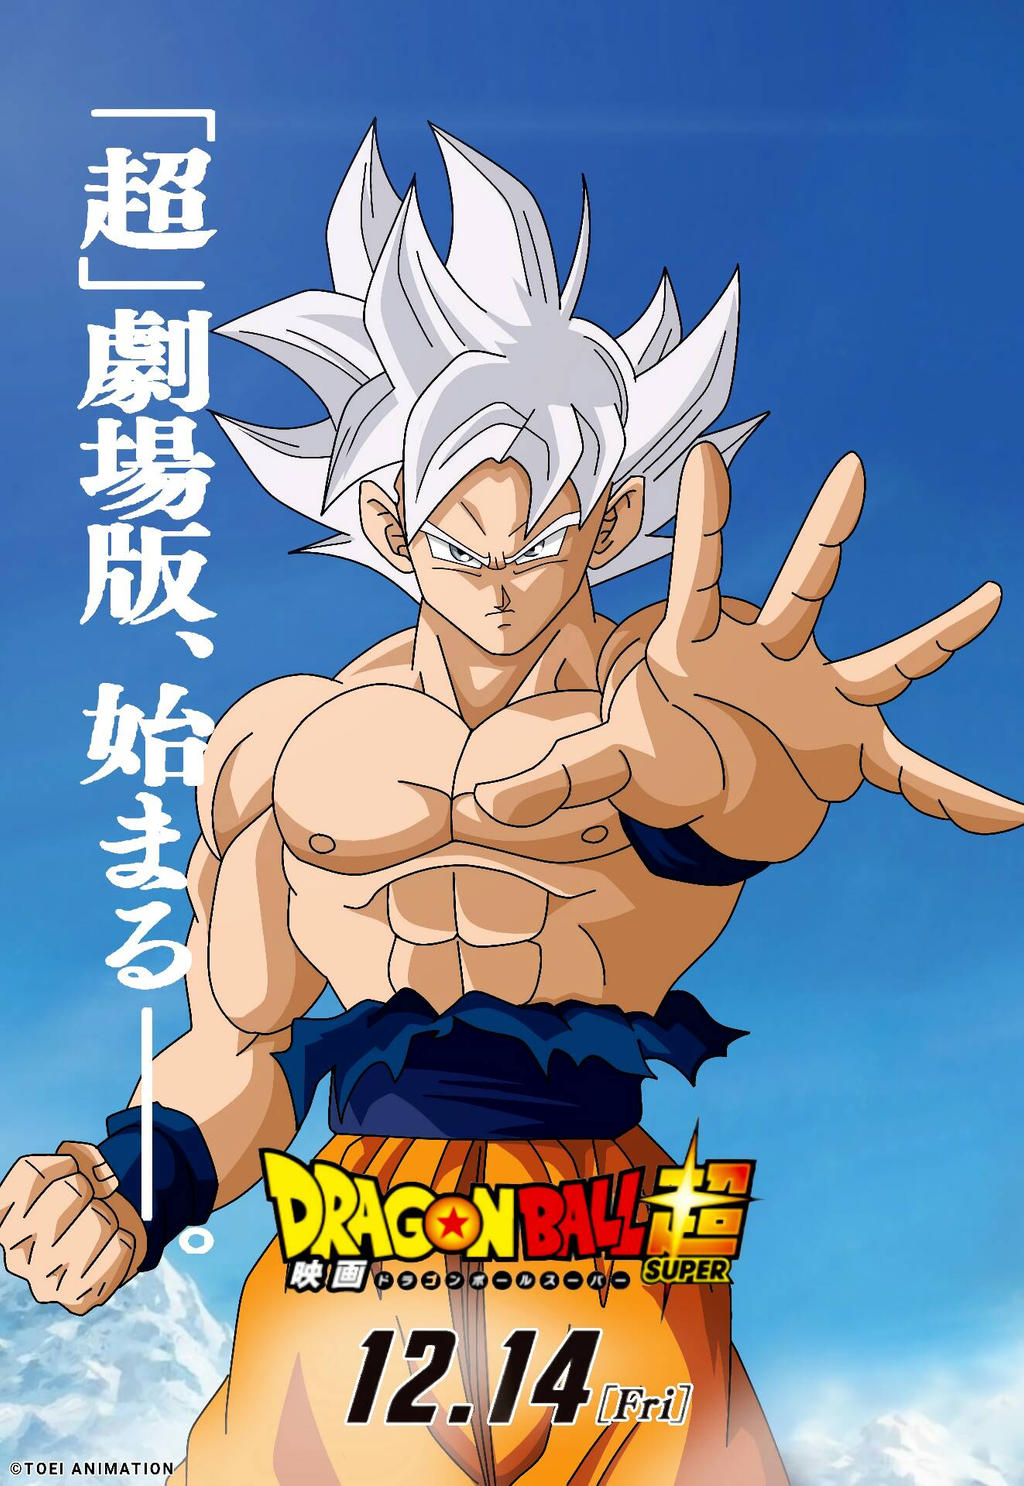 DRAGON BALL THE MOVIE 2018 Goku U.I.P Poster by XZEROTONY DeviantArt